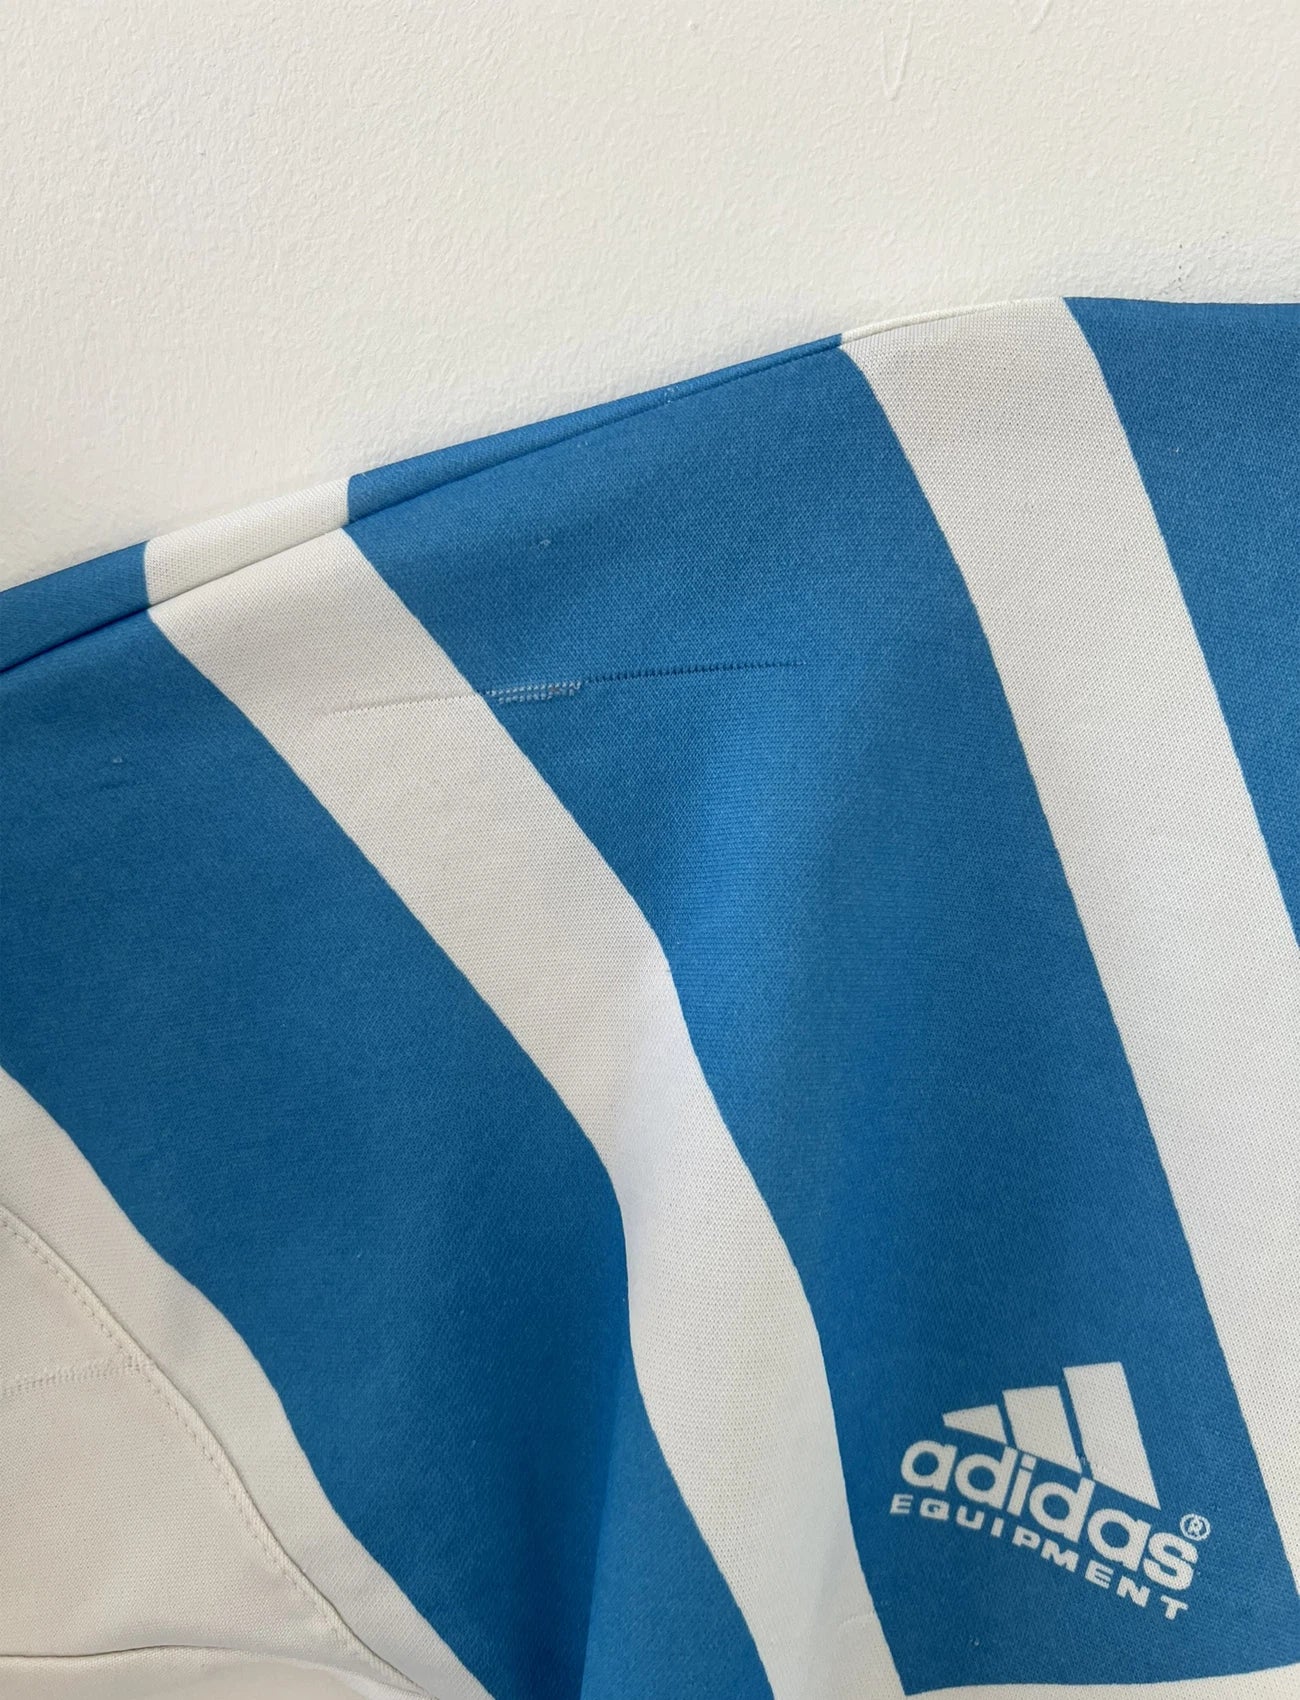 Maillot de foot vintage de l'OM de la saison 1991/1992. Il s'agit du maillot domicile blanc et bleu. On peut retrouver l'équipementier adidas et le sponsor panasonic. Il s'agit d'un maillot authentique d'époque.